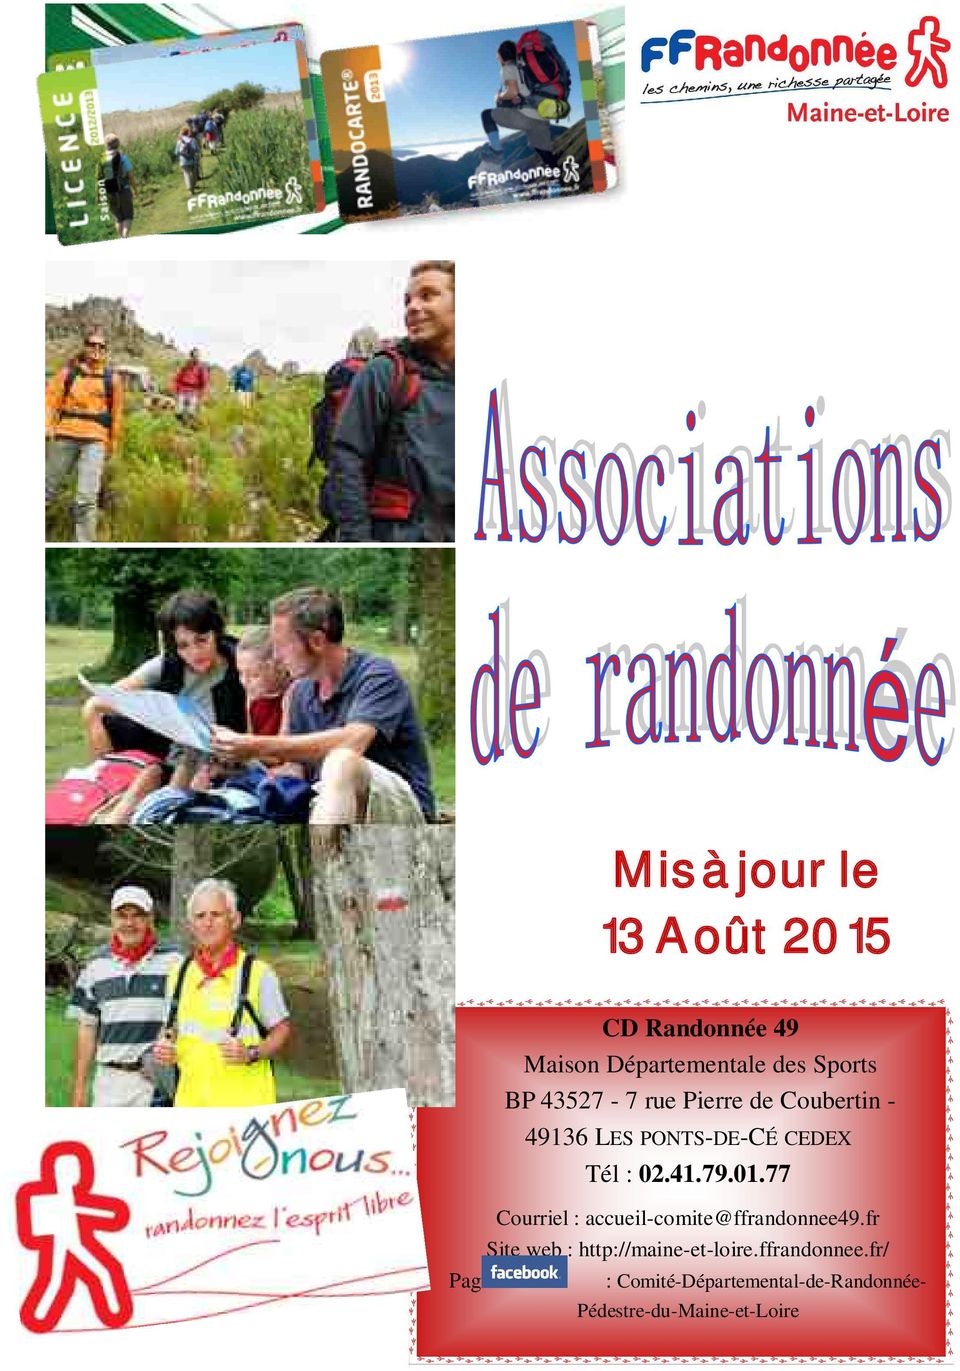 77 Courriel : accueil-comite@ffrandonnee49.fr Site web : http://maine-et-loire.